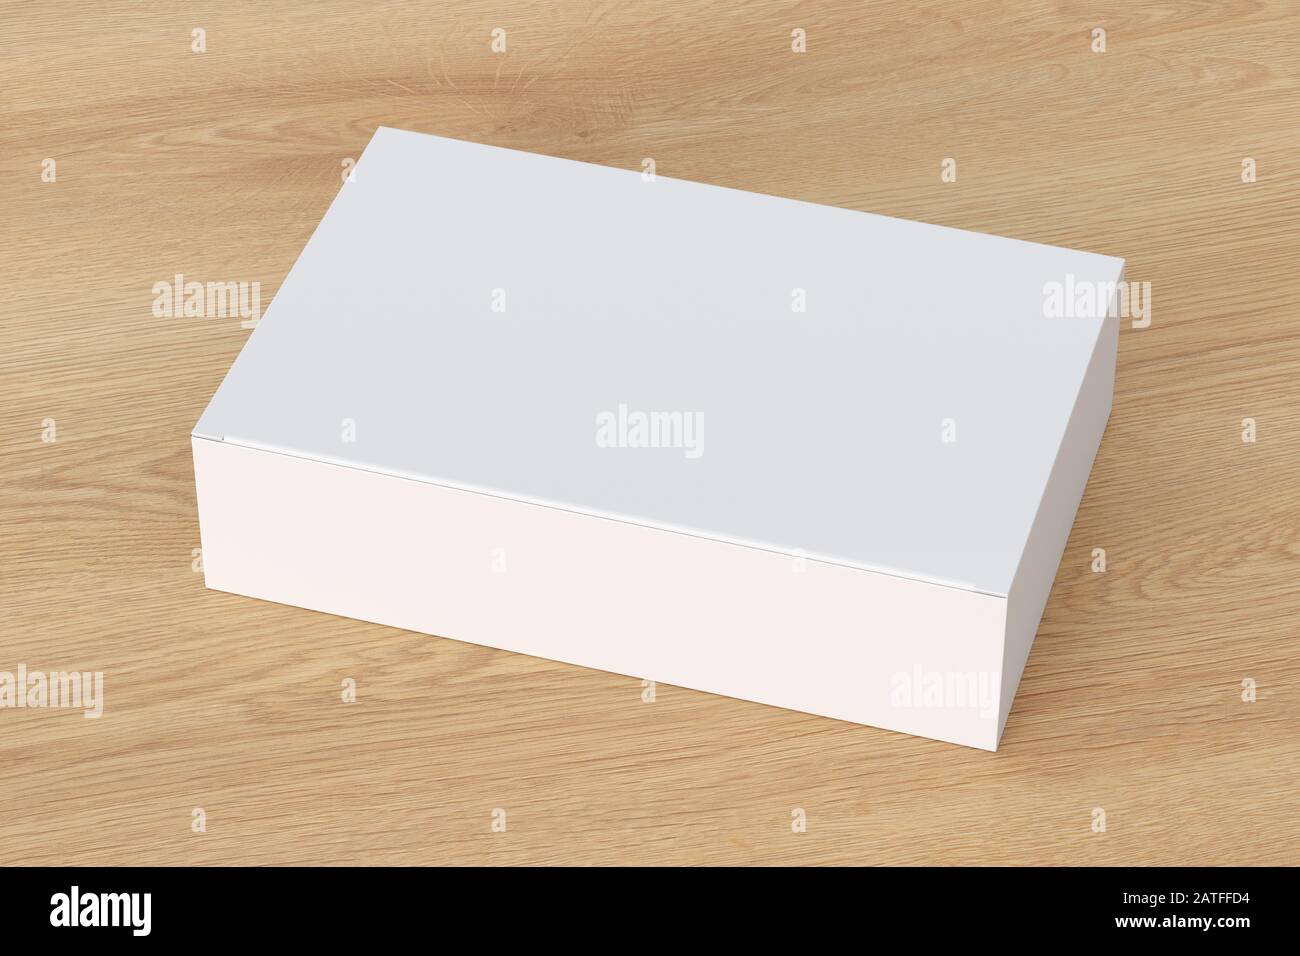 Boîte plate large blanche vierge avec couvercle rabattable fermé sur fond en bois. Chemin de détourage autour de la maquette de boîte Banque D'Images